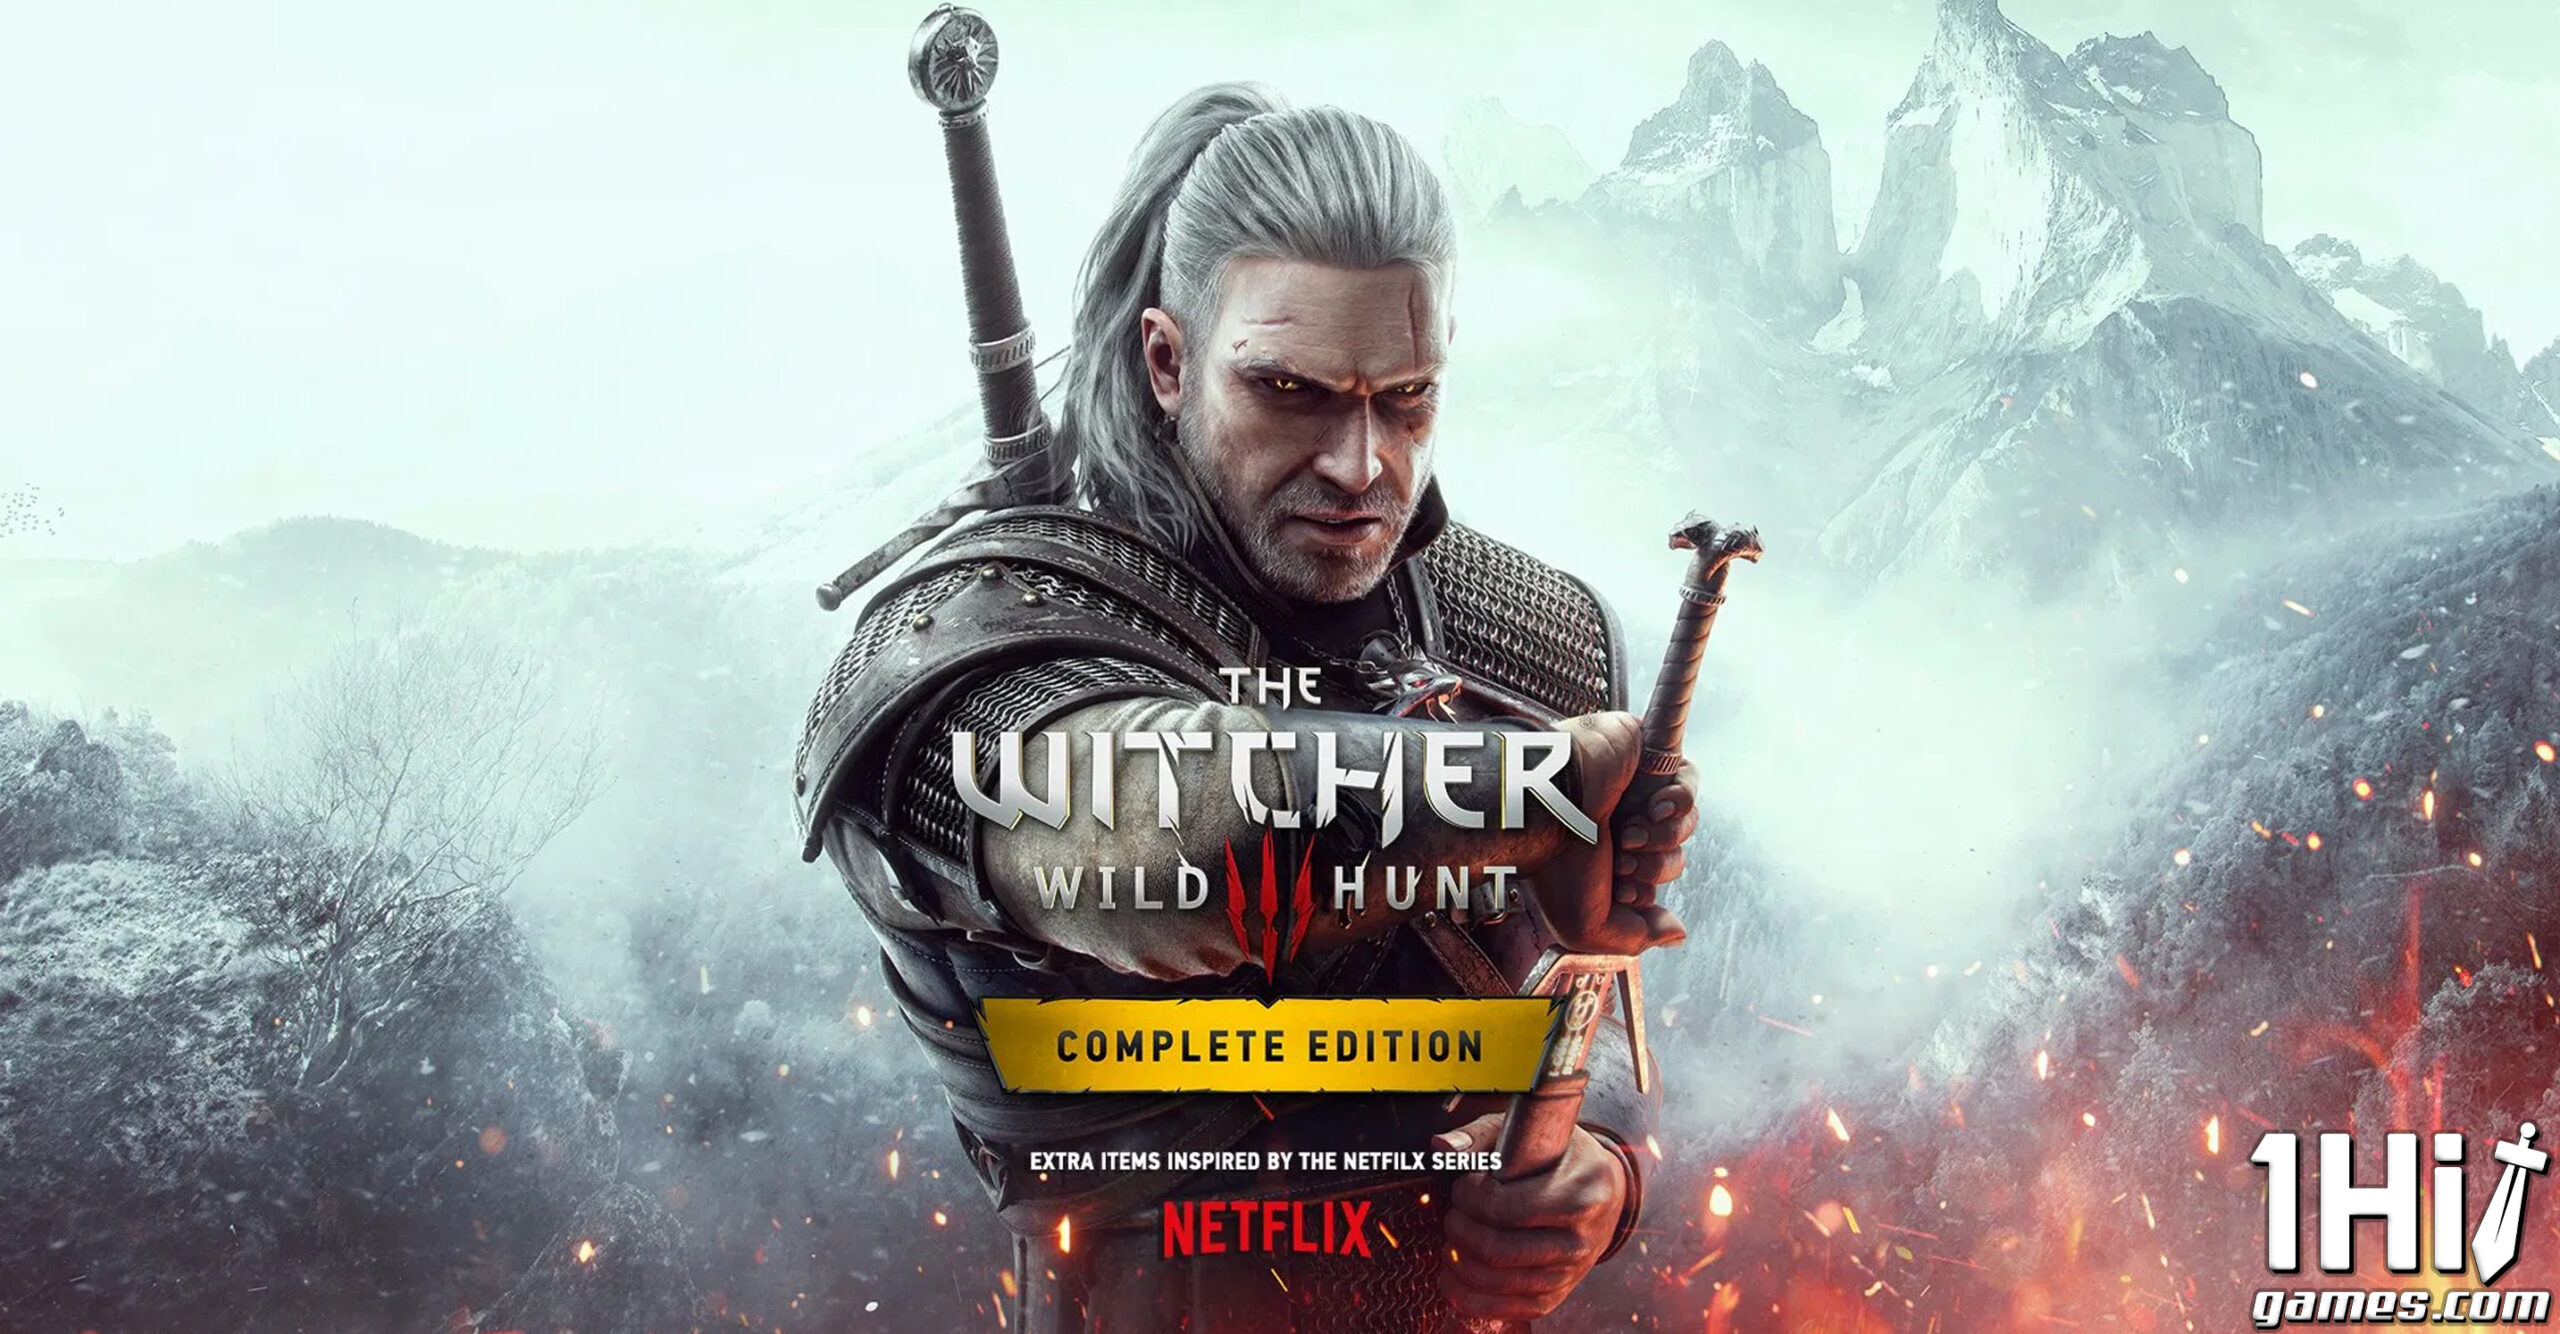 The Witcher 3 terá DLCs gratuitos inspiradas em série da Netflix